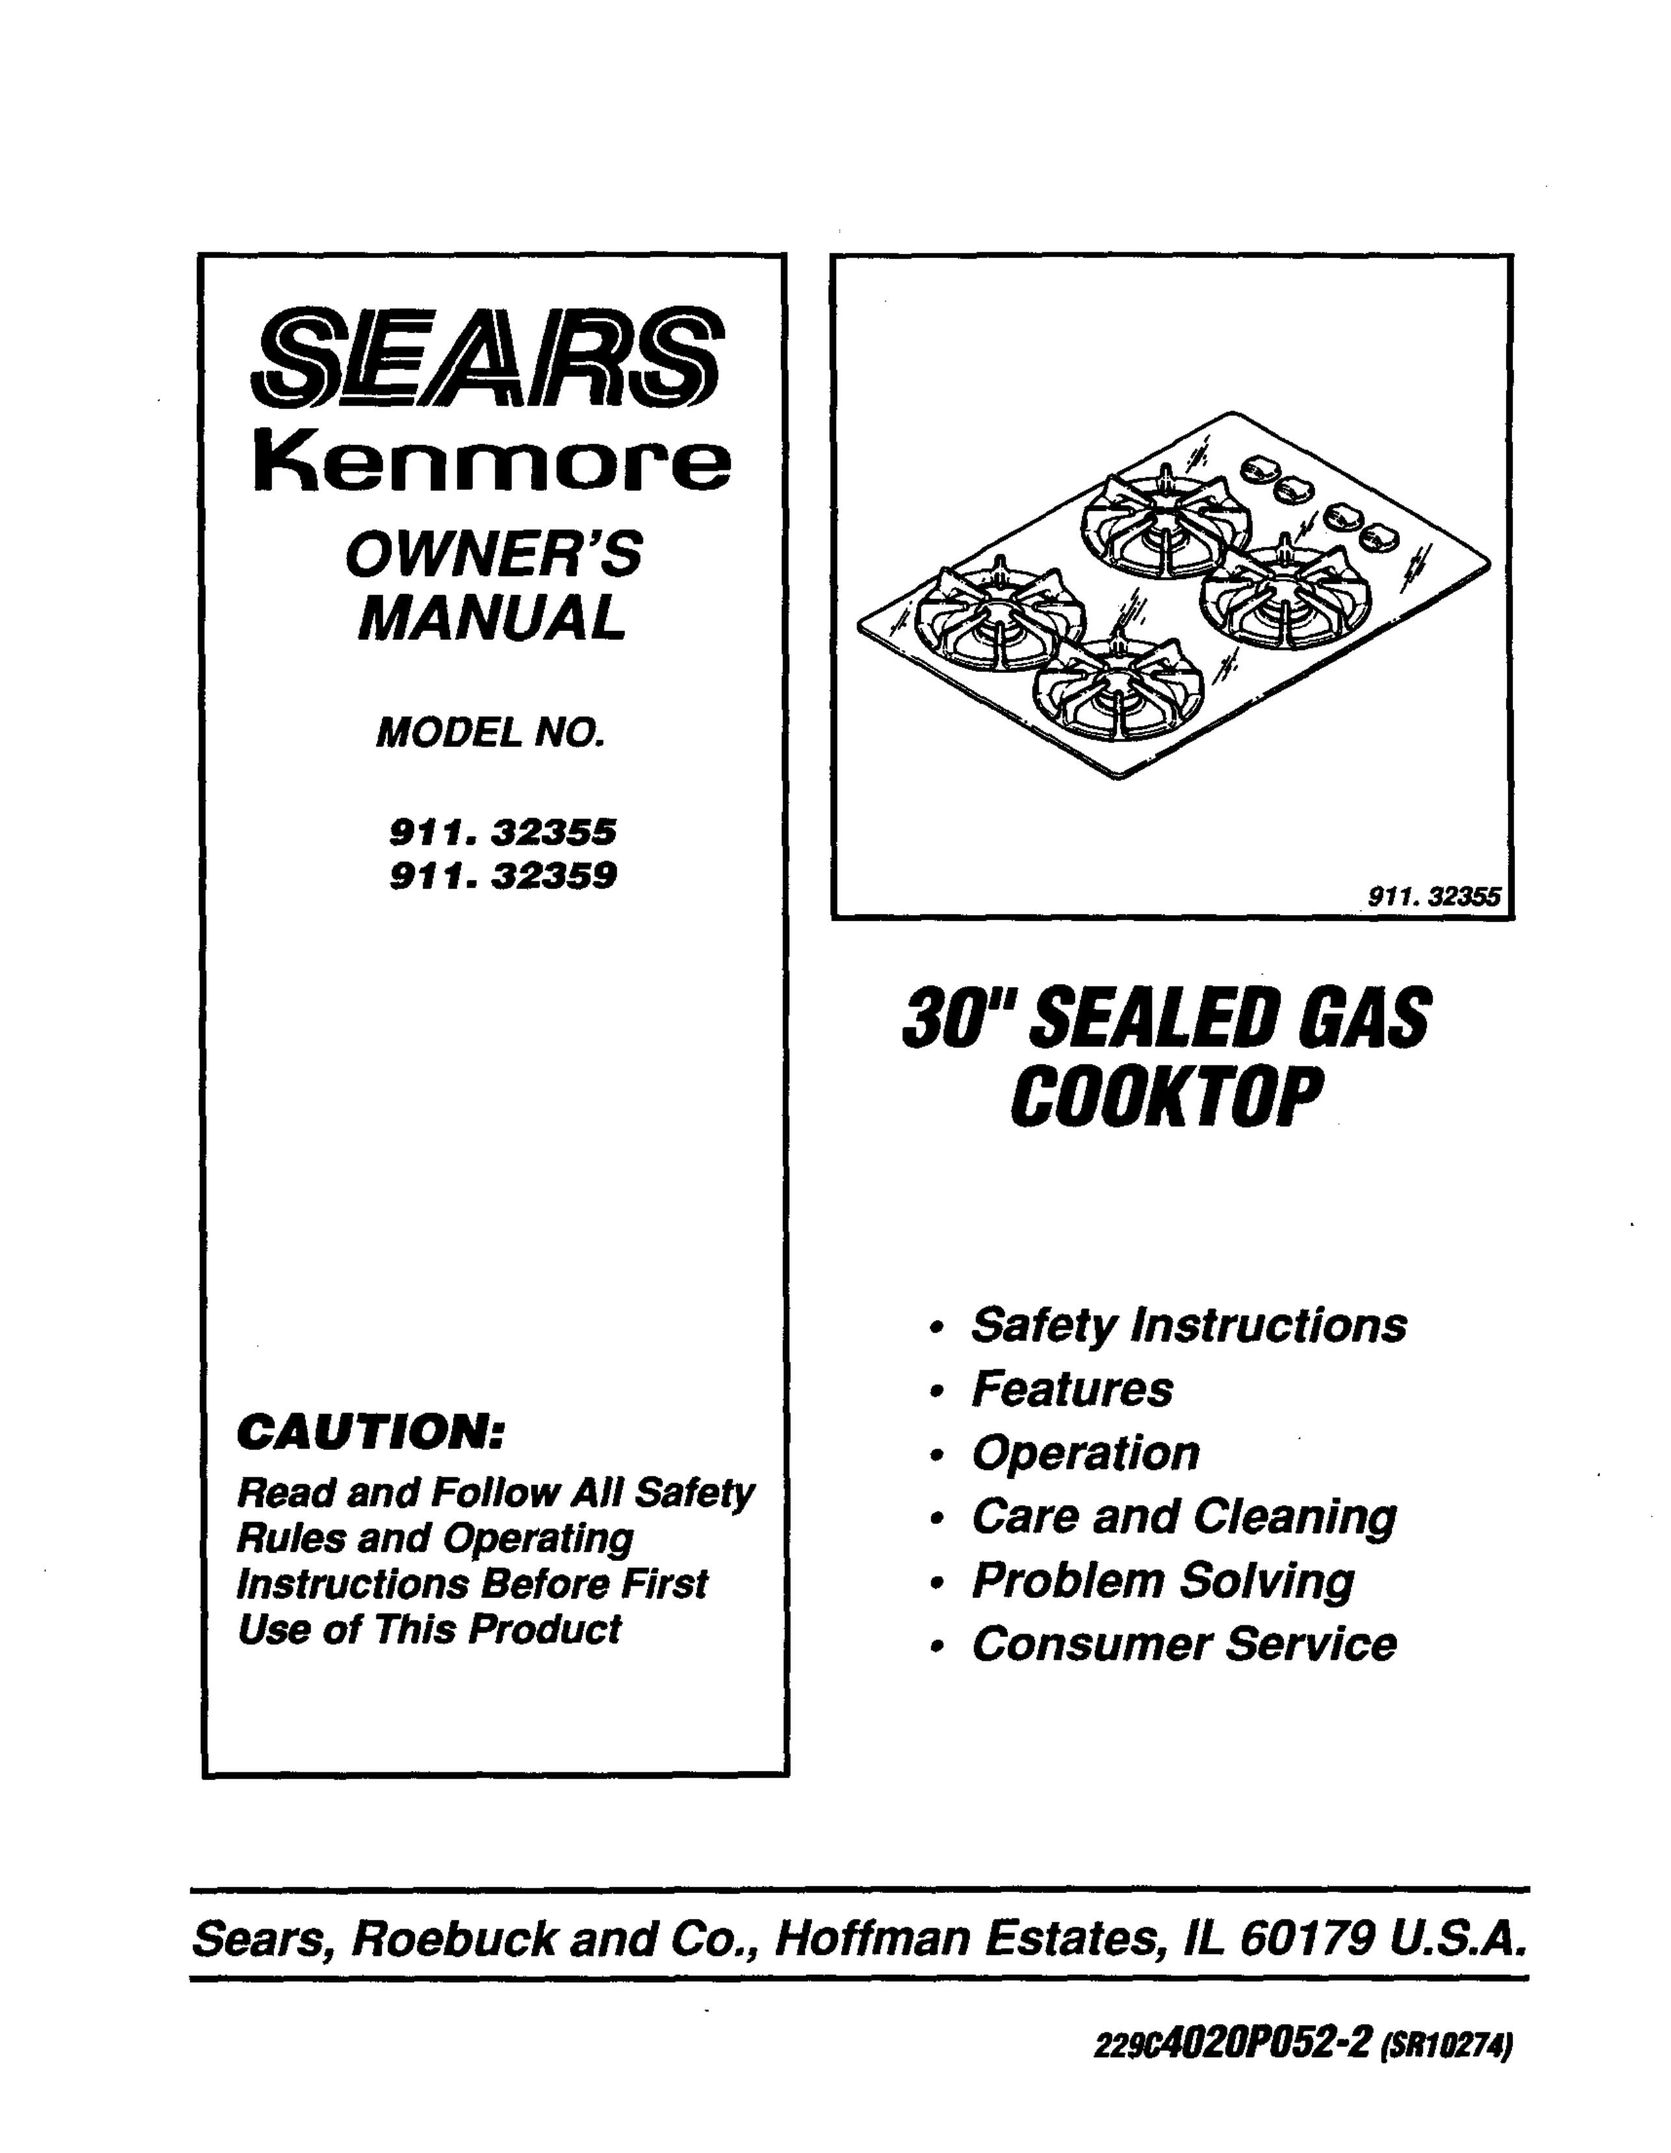 Sears 911.32359 Cooktop User Manual